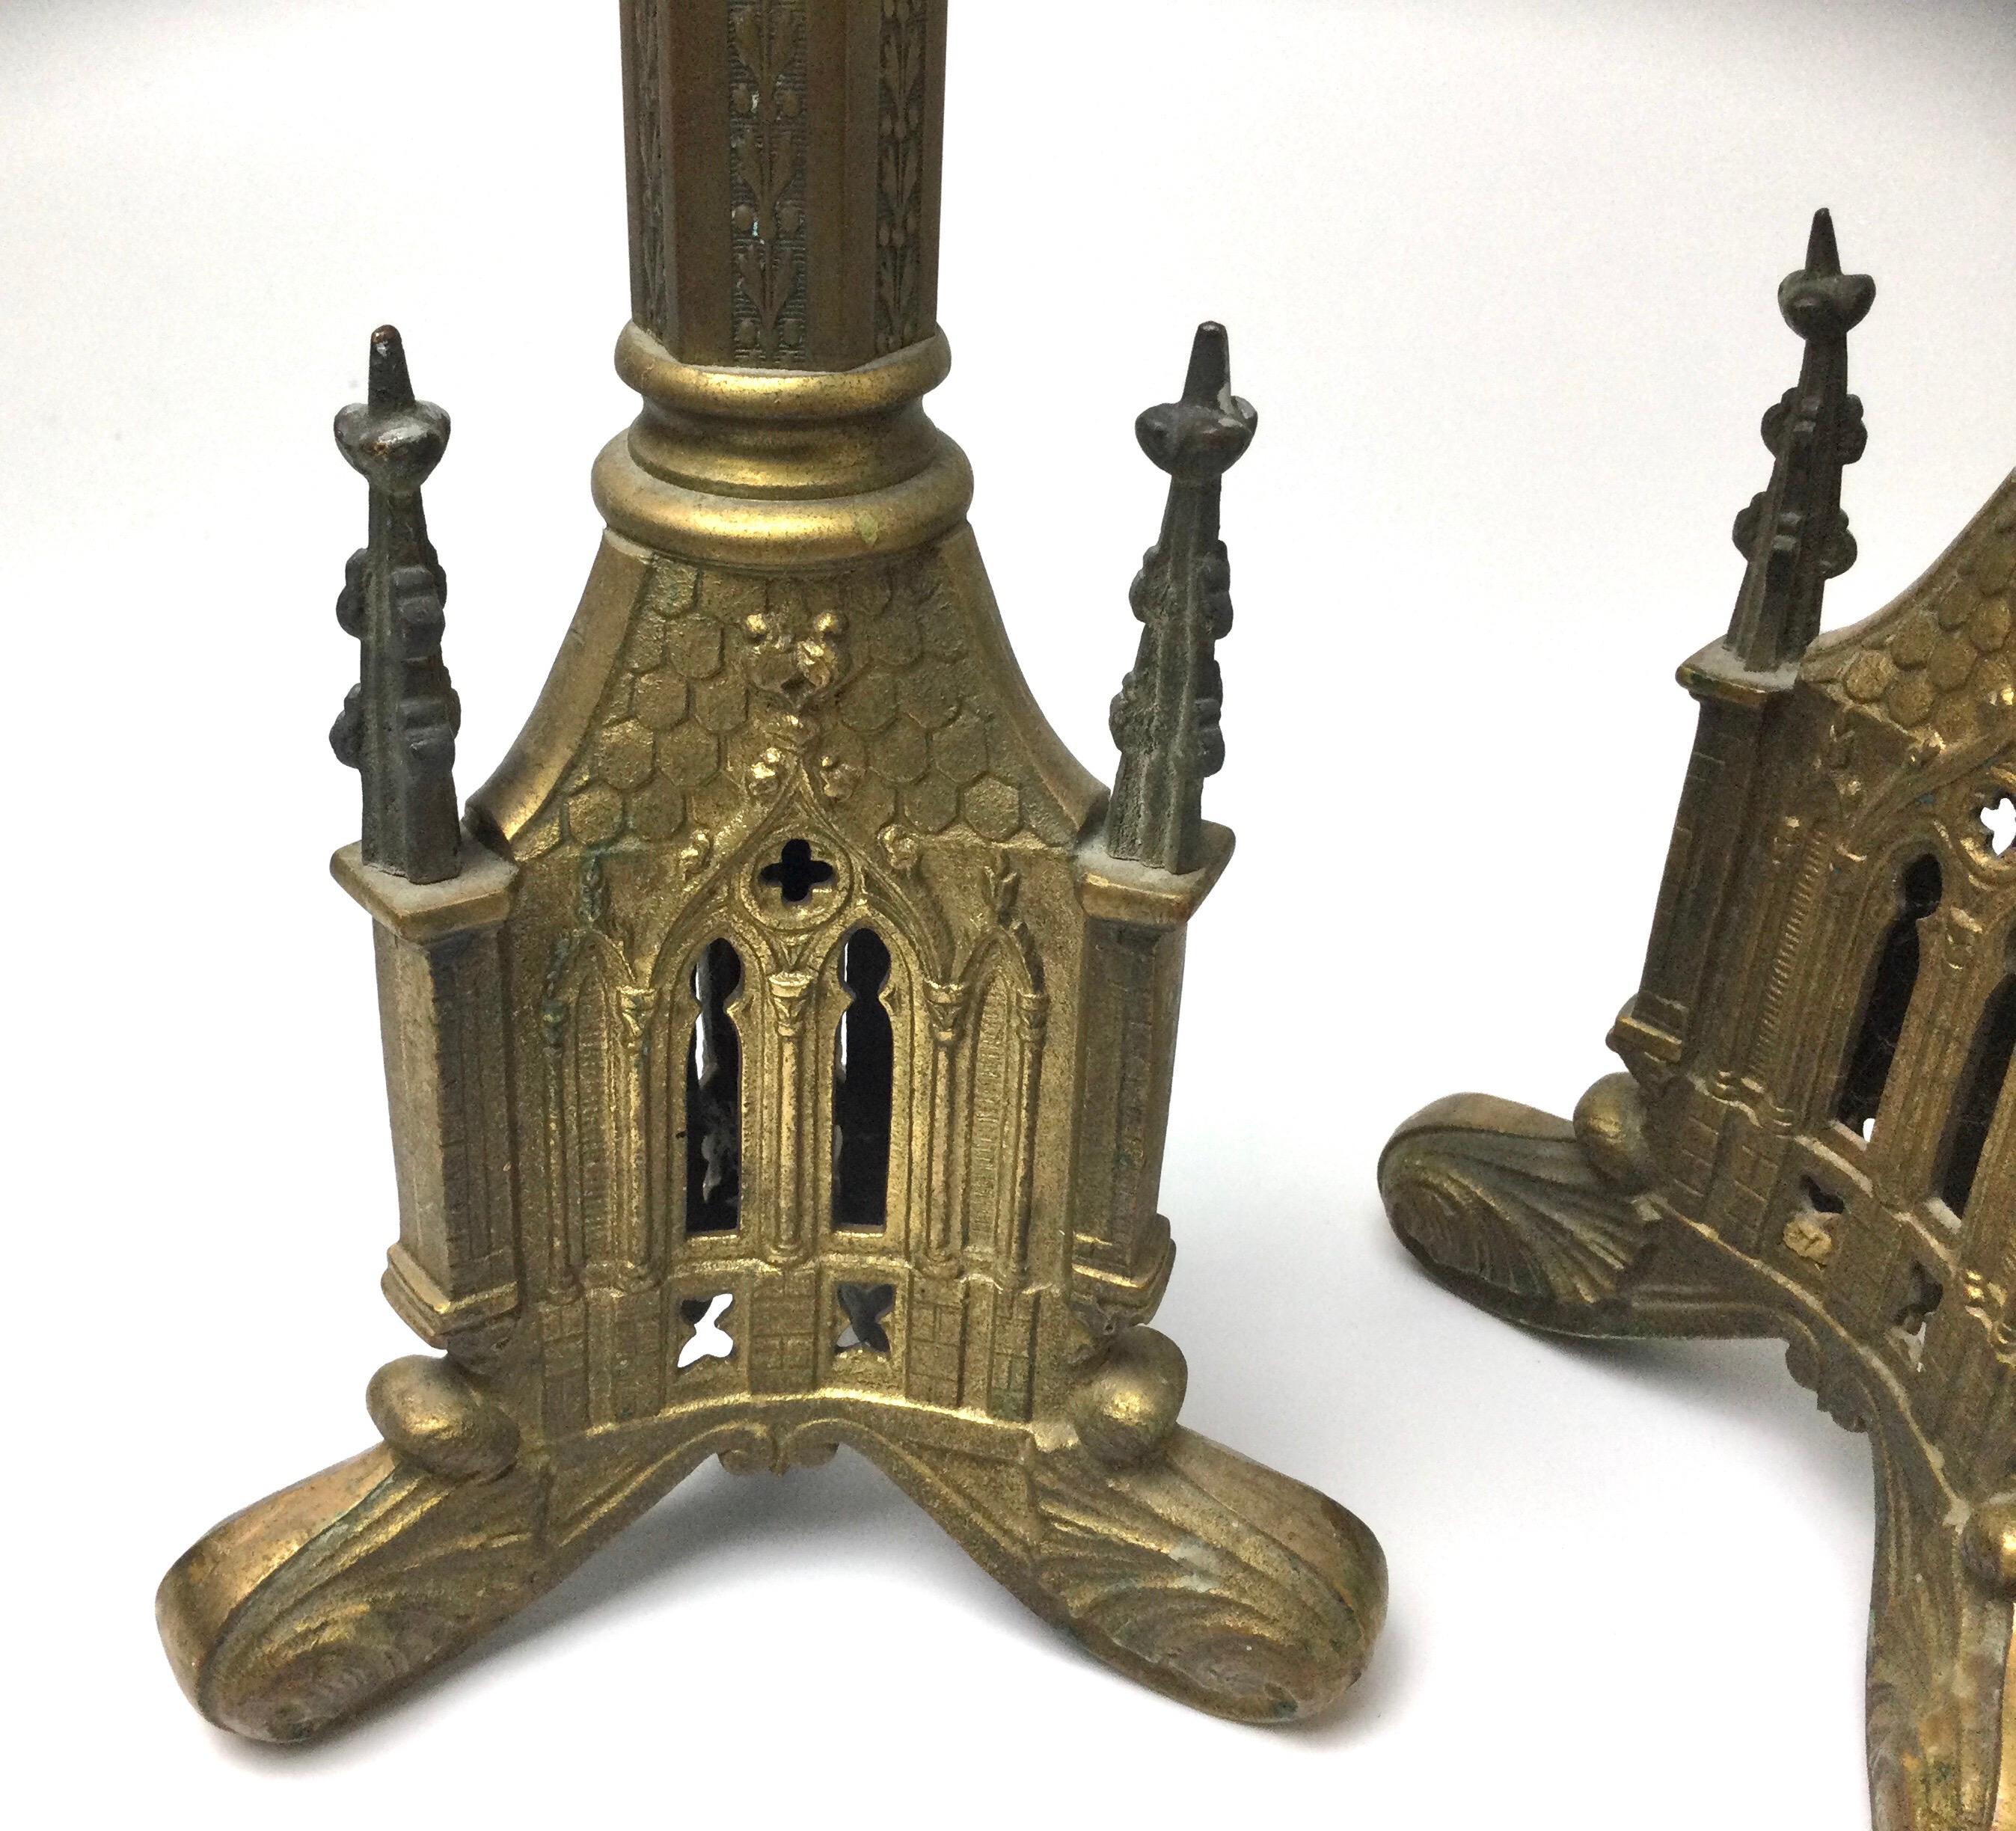 How do you modernize brass candlesticks?